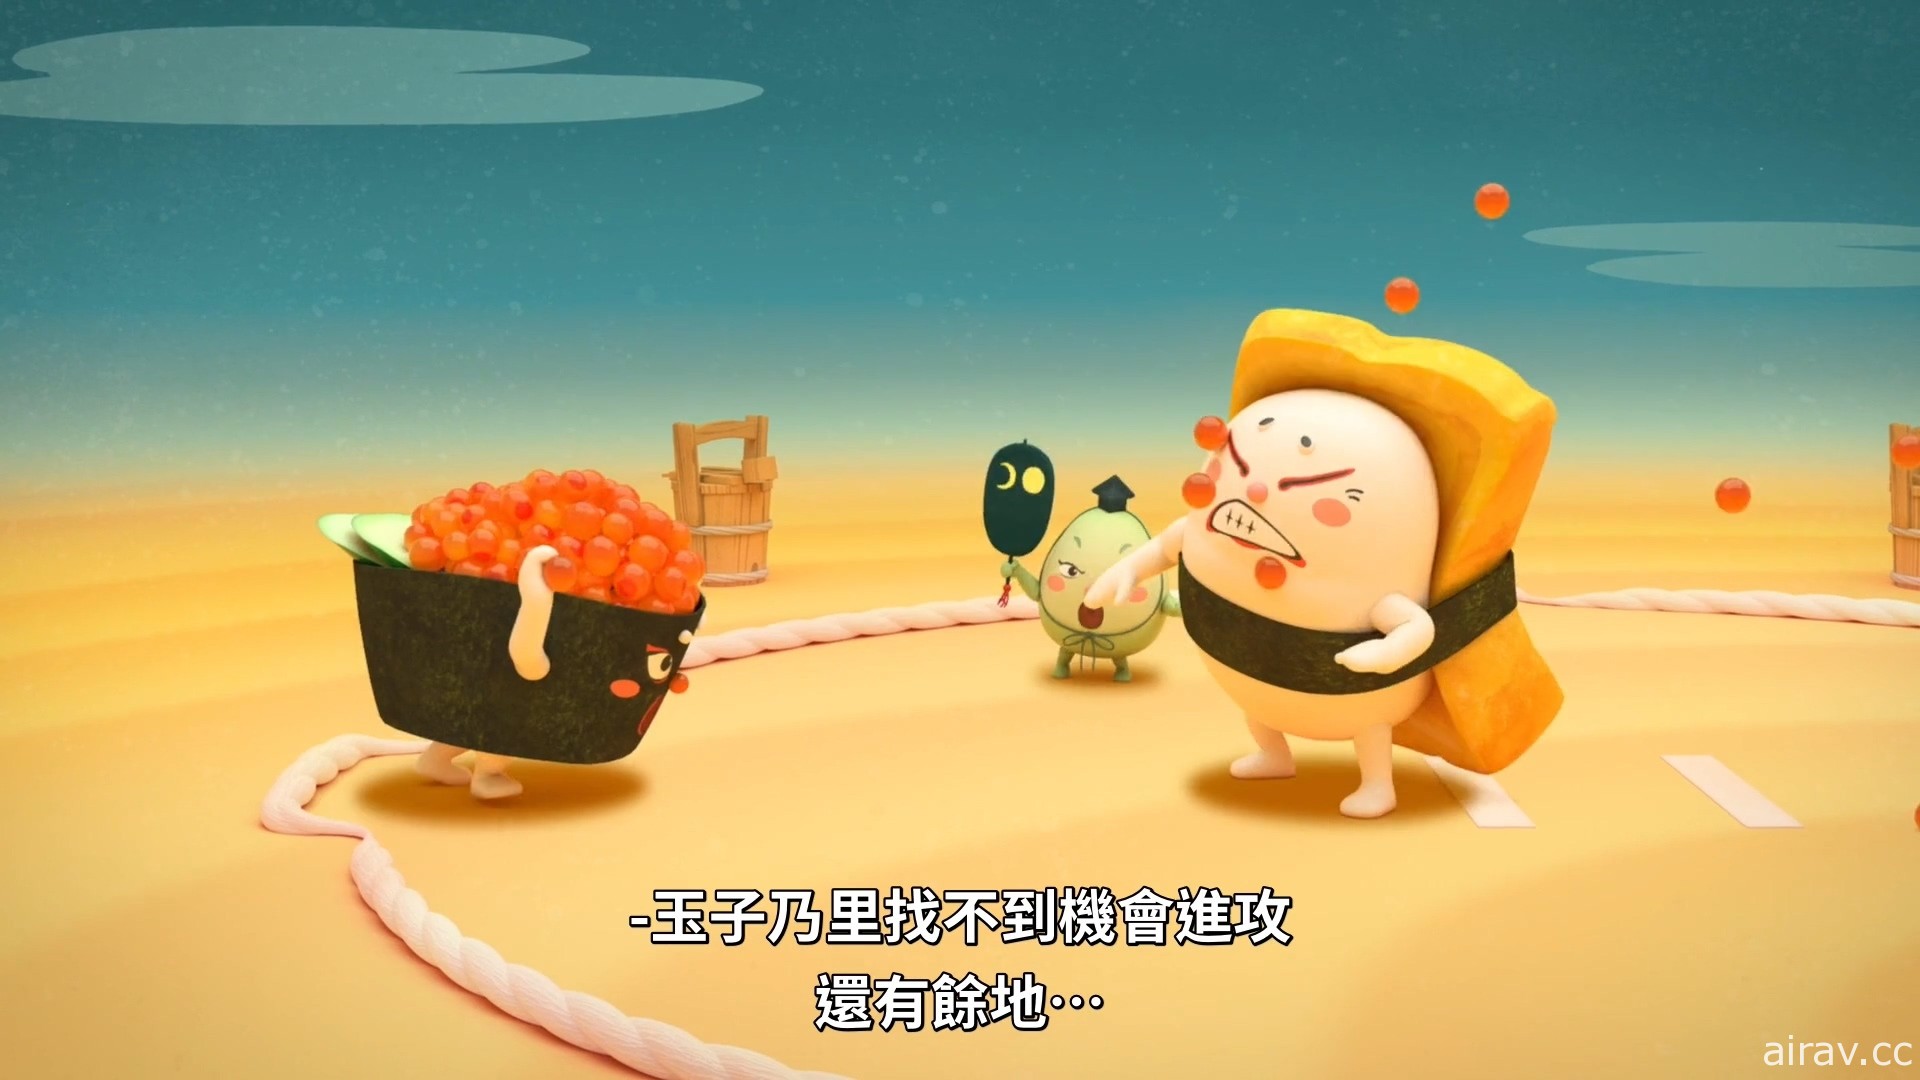 【試片】《壽司大相撲》看得我都餓了 鮪魚腹、玉子燒、海膽的相撲大亂鬥